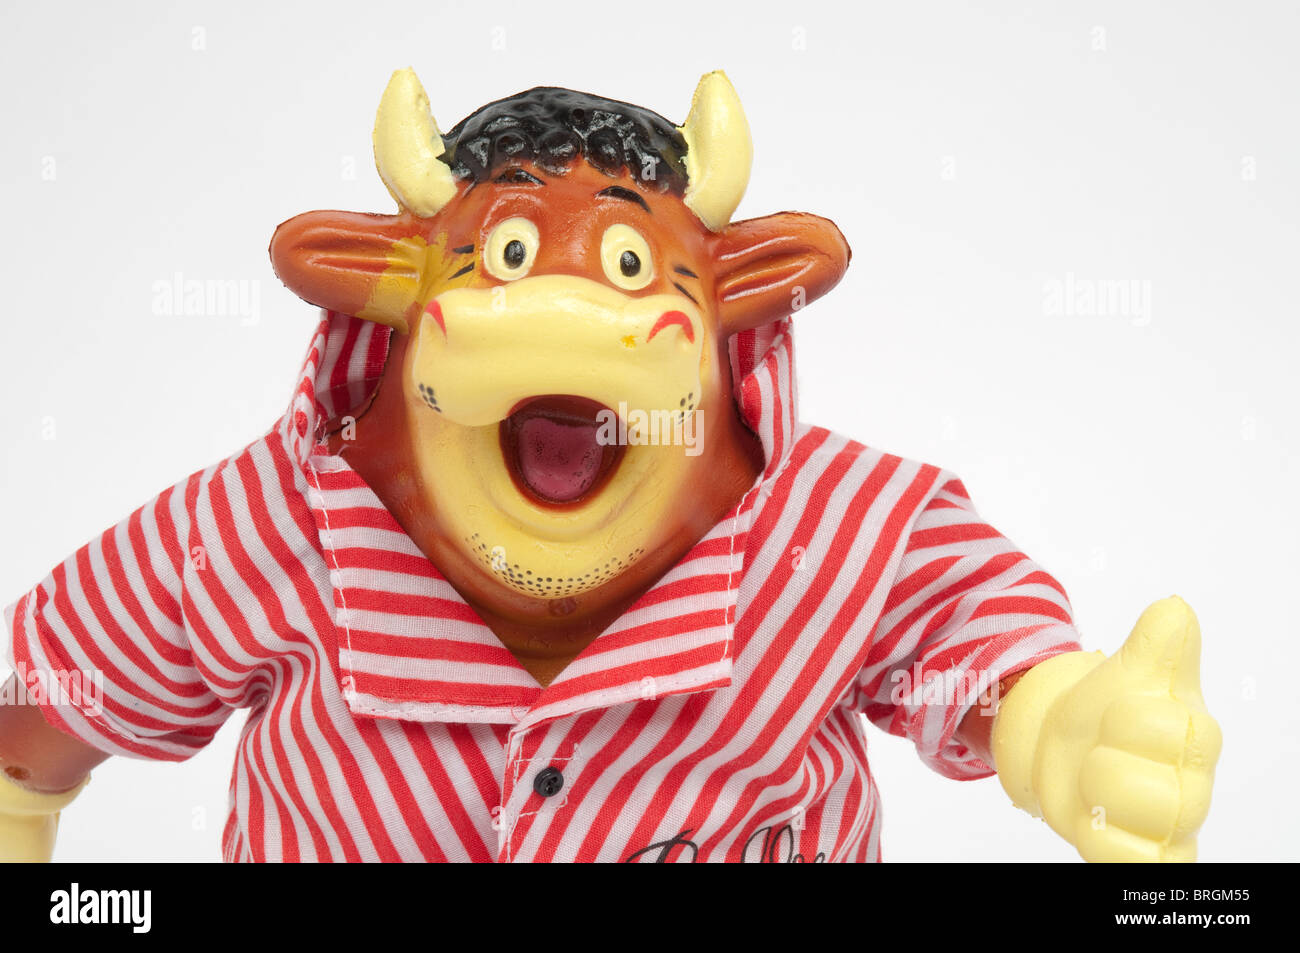 Moldeables Bully juguete, mascota de la diana del programa de TV. Foto de stock